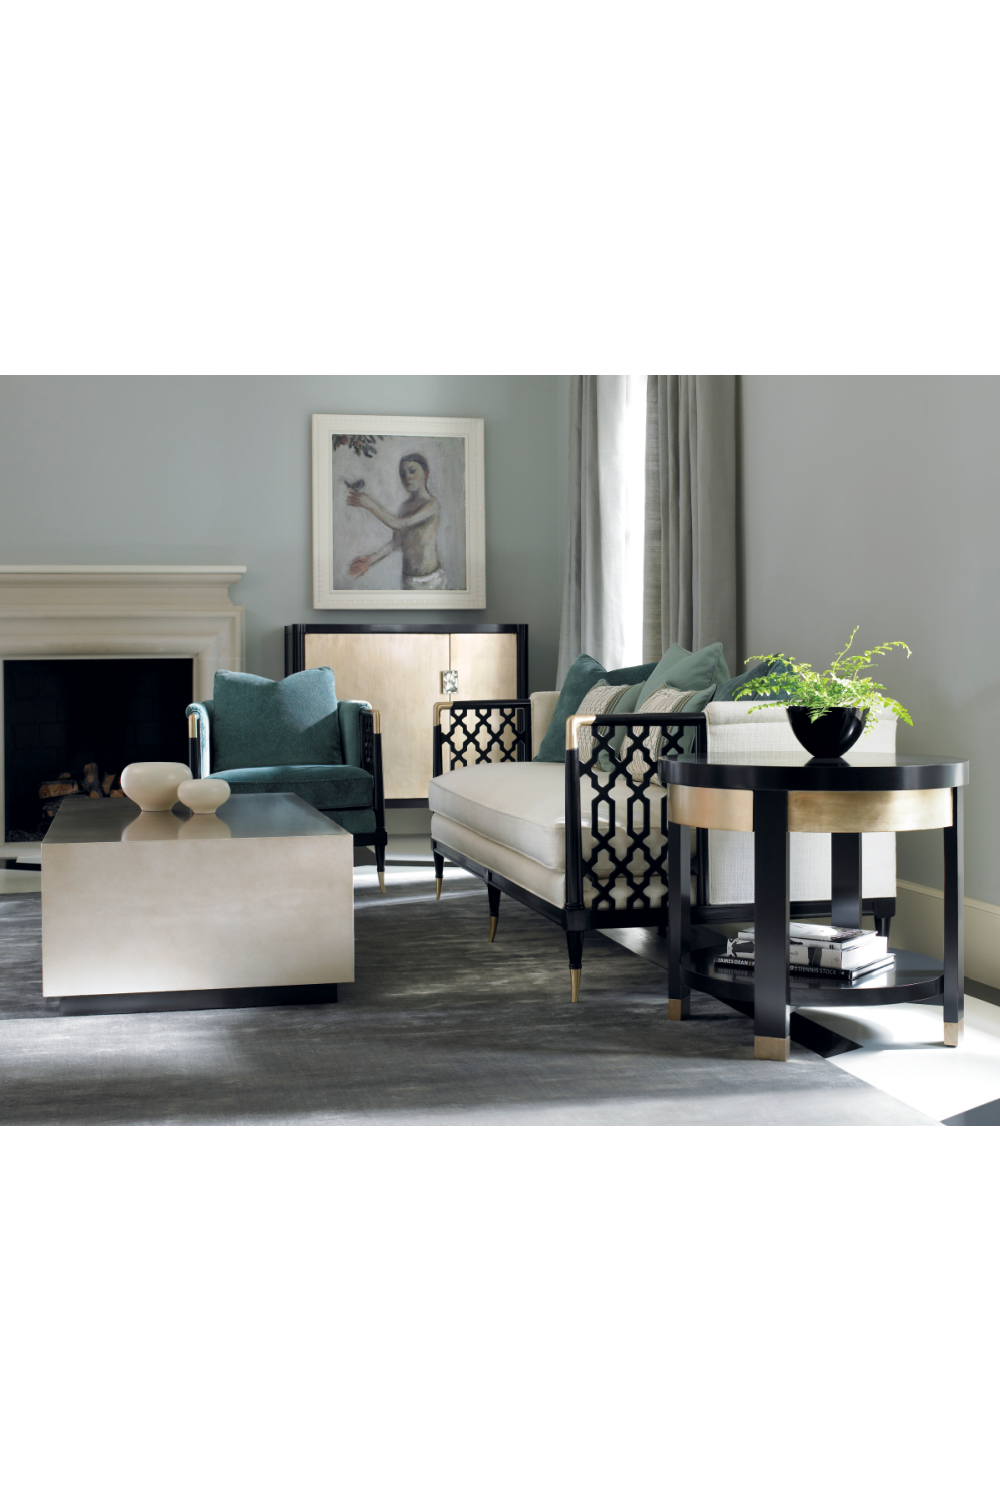 Cushioned Modern Sofa | Caracole Lattice Entertain You | Oroa.com